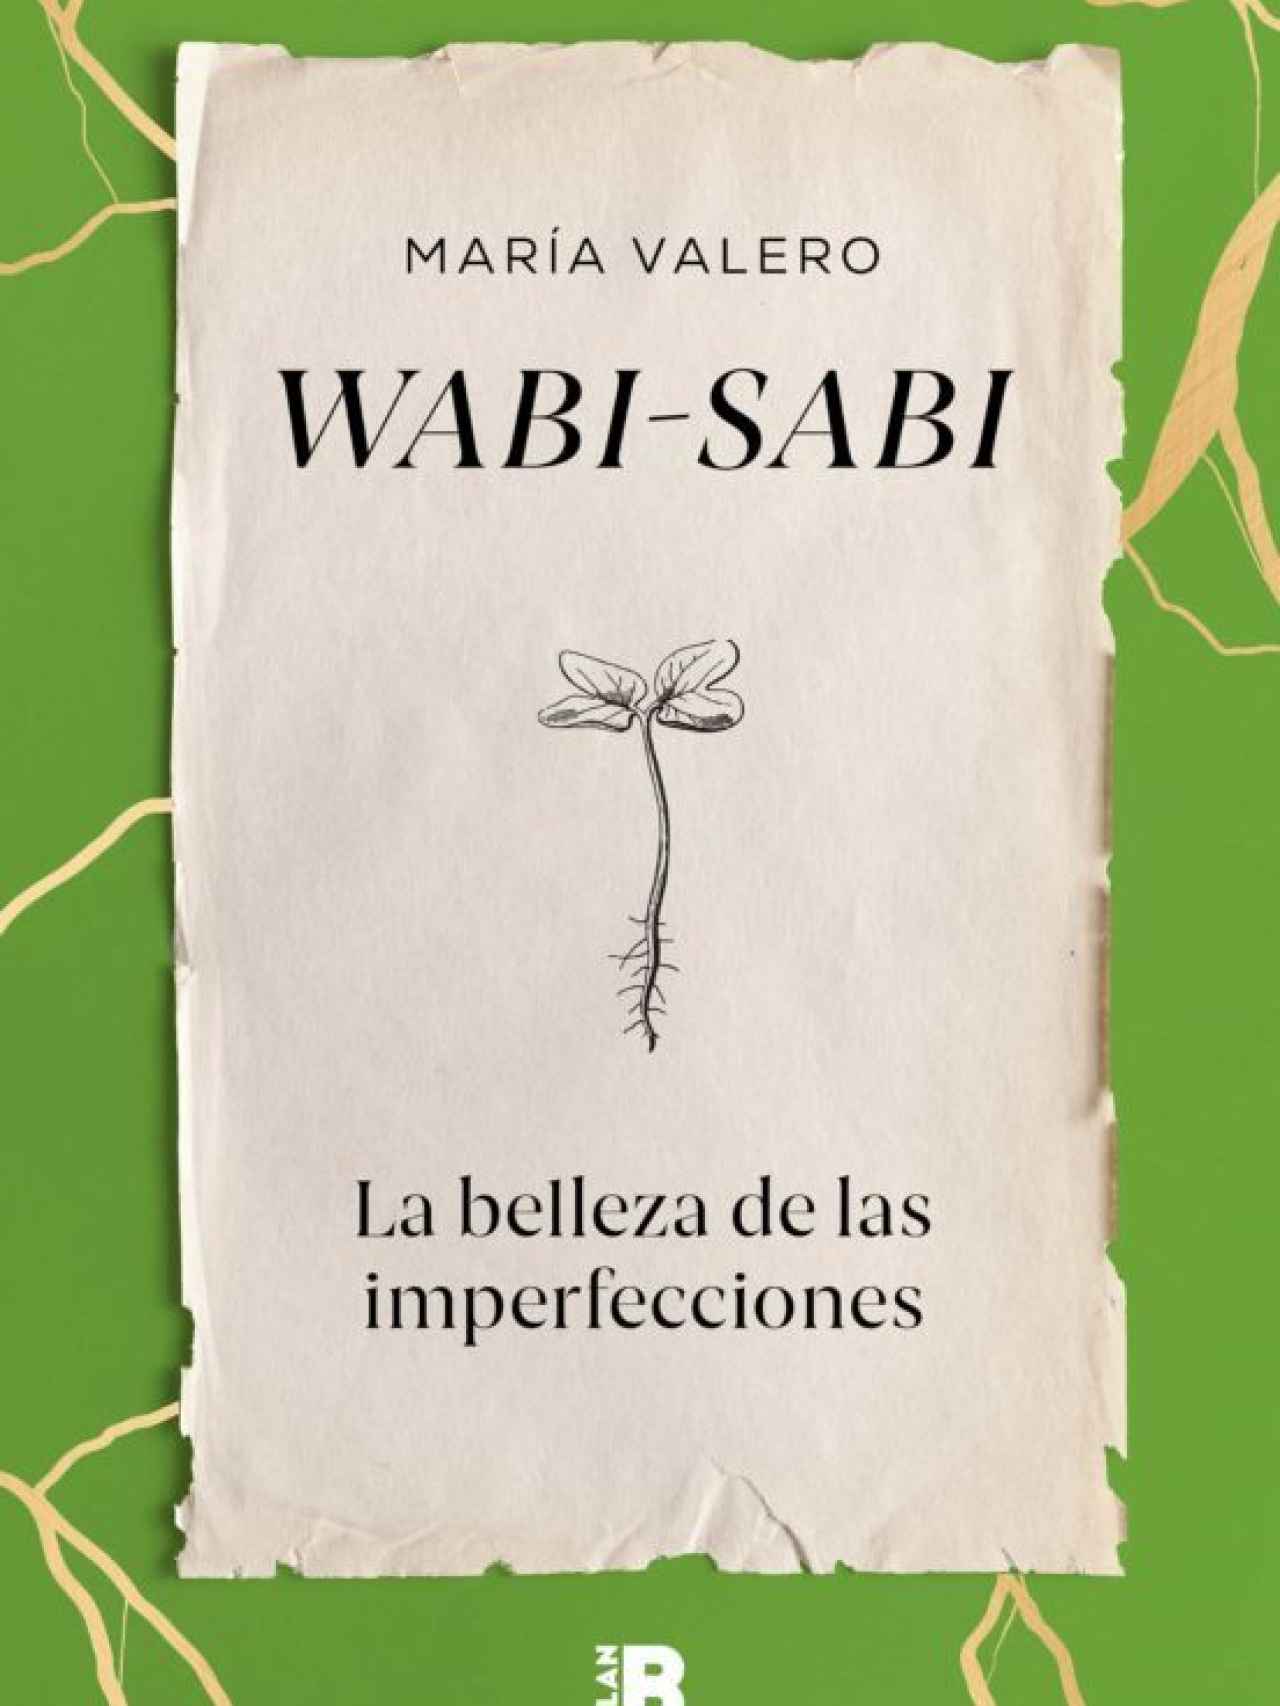 Portada del libro 'Wabi-Sabi' de María Valero.